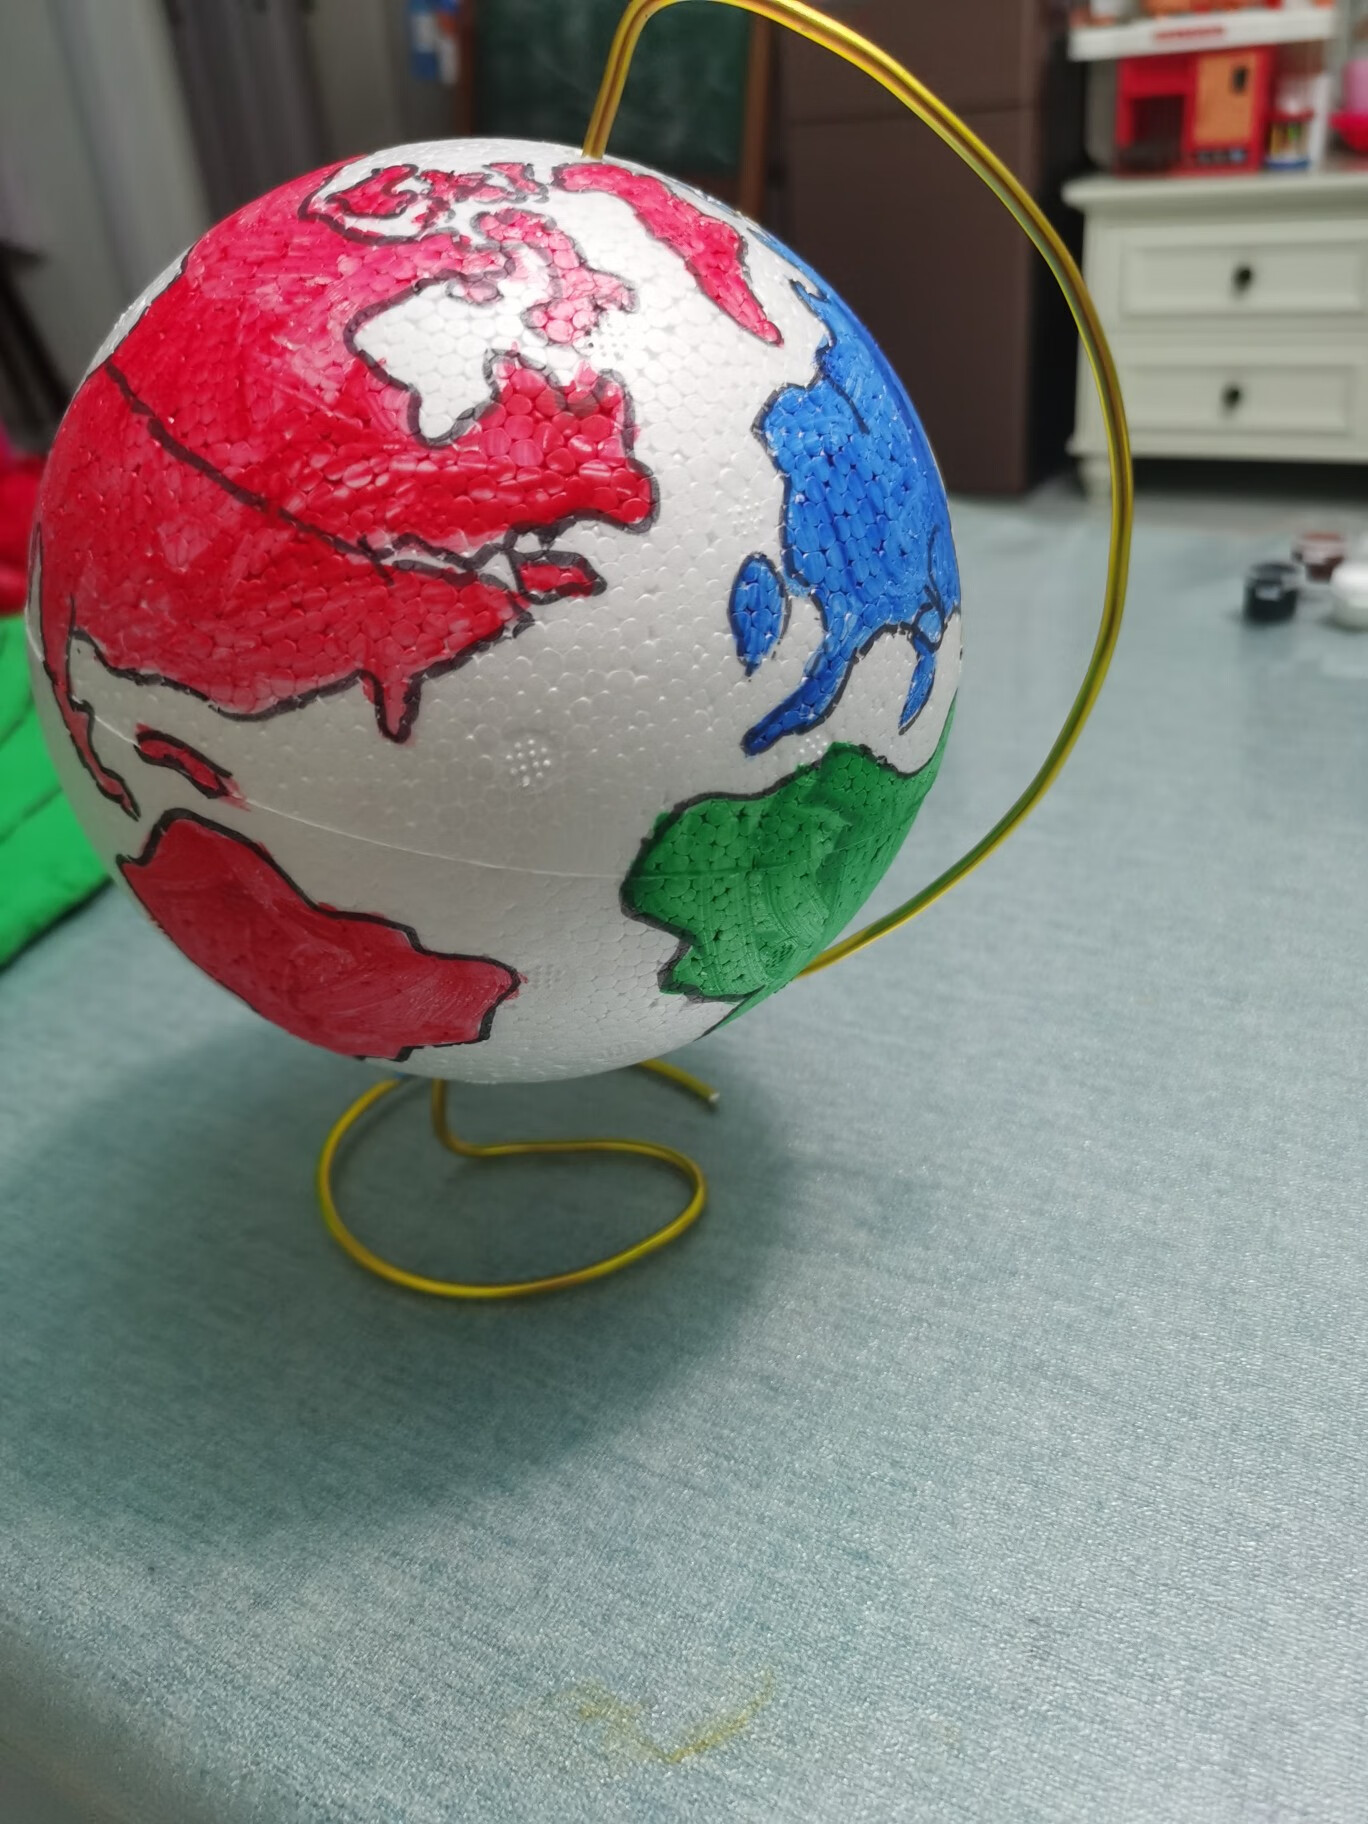 地球仪模型制作橡皮泥图片